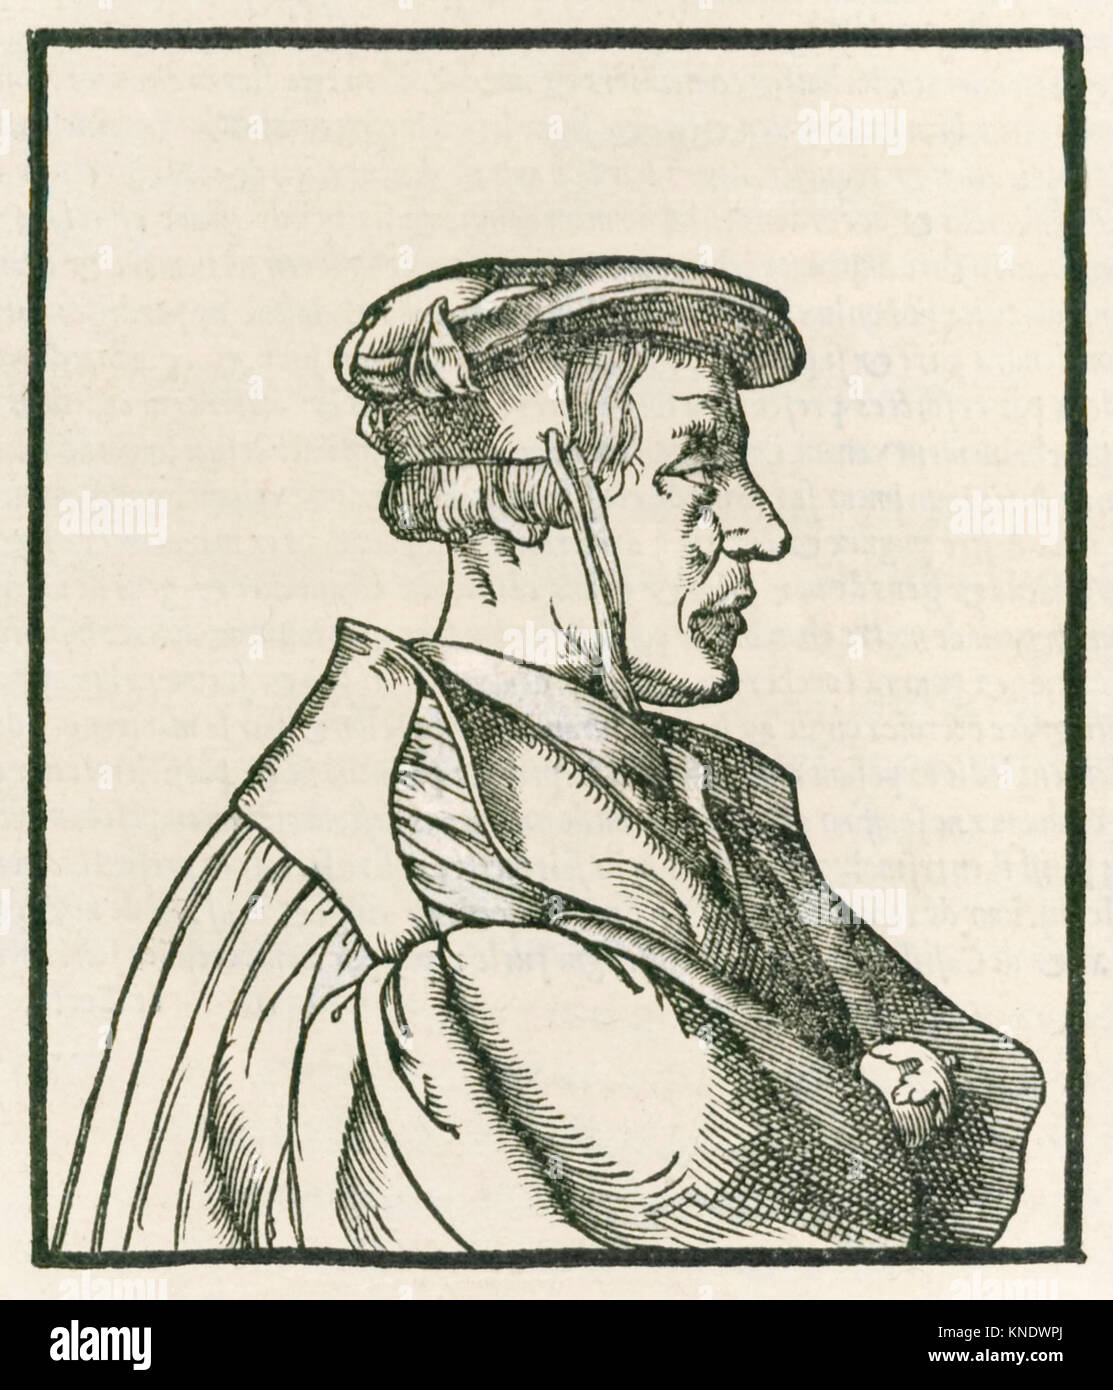 Heinrich Cornelius Agrippa von Nettesheim (1486-1535) página de título grabado de 'De Occulta Philosophia libri tres" publicado en 1533. Ver más información a continuación. Foto de stock